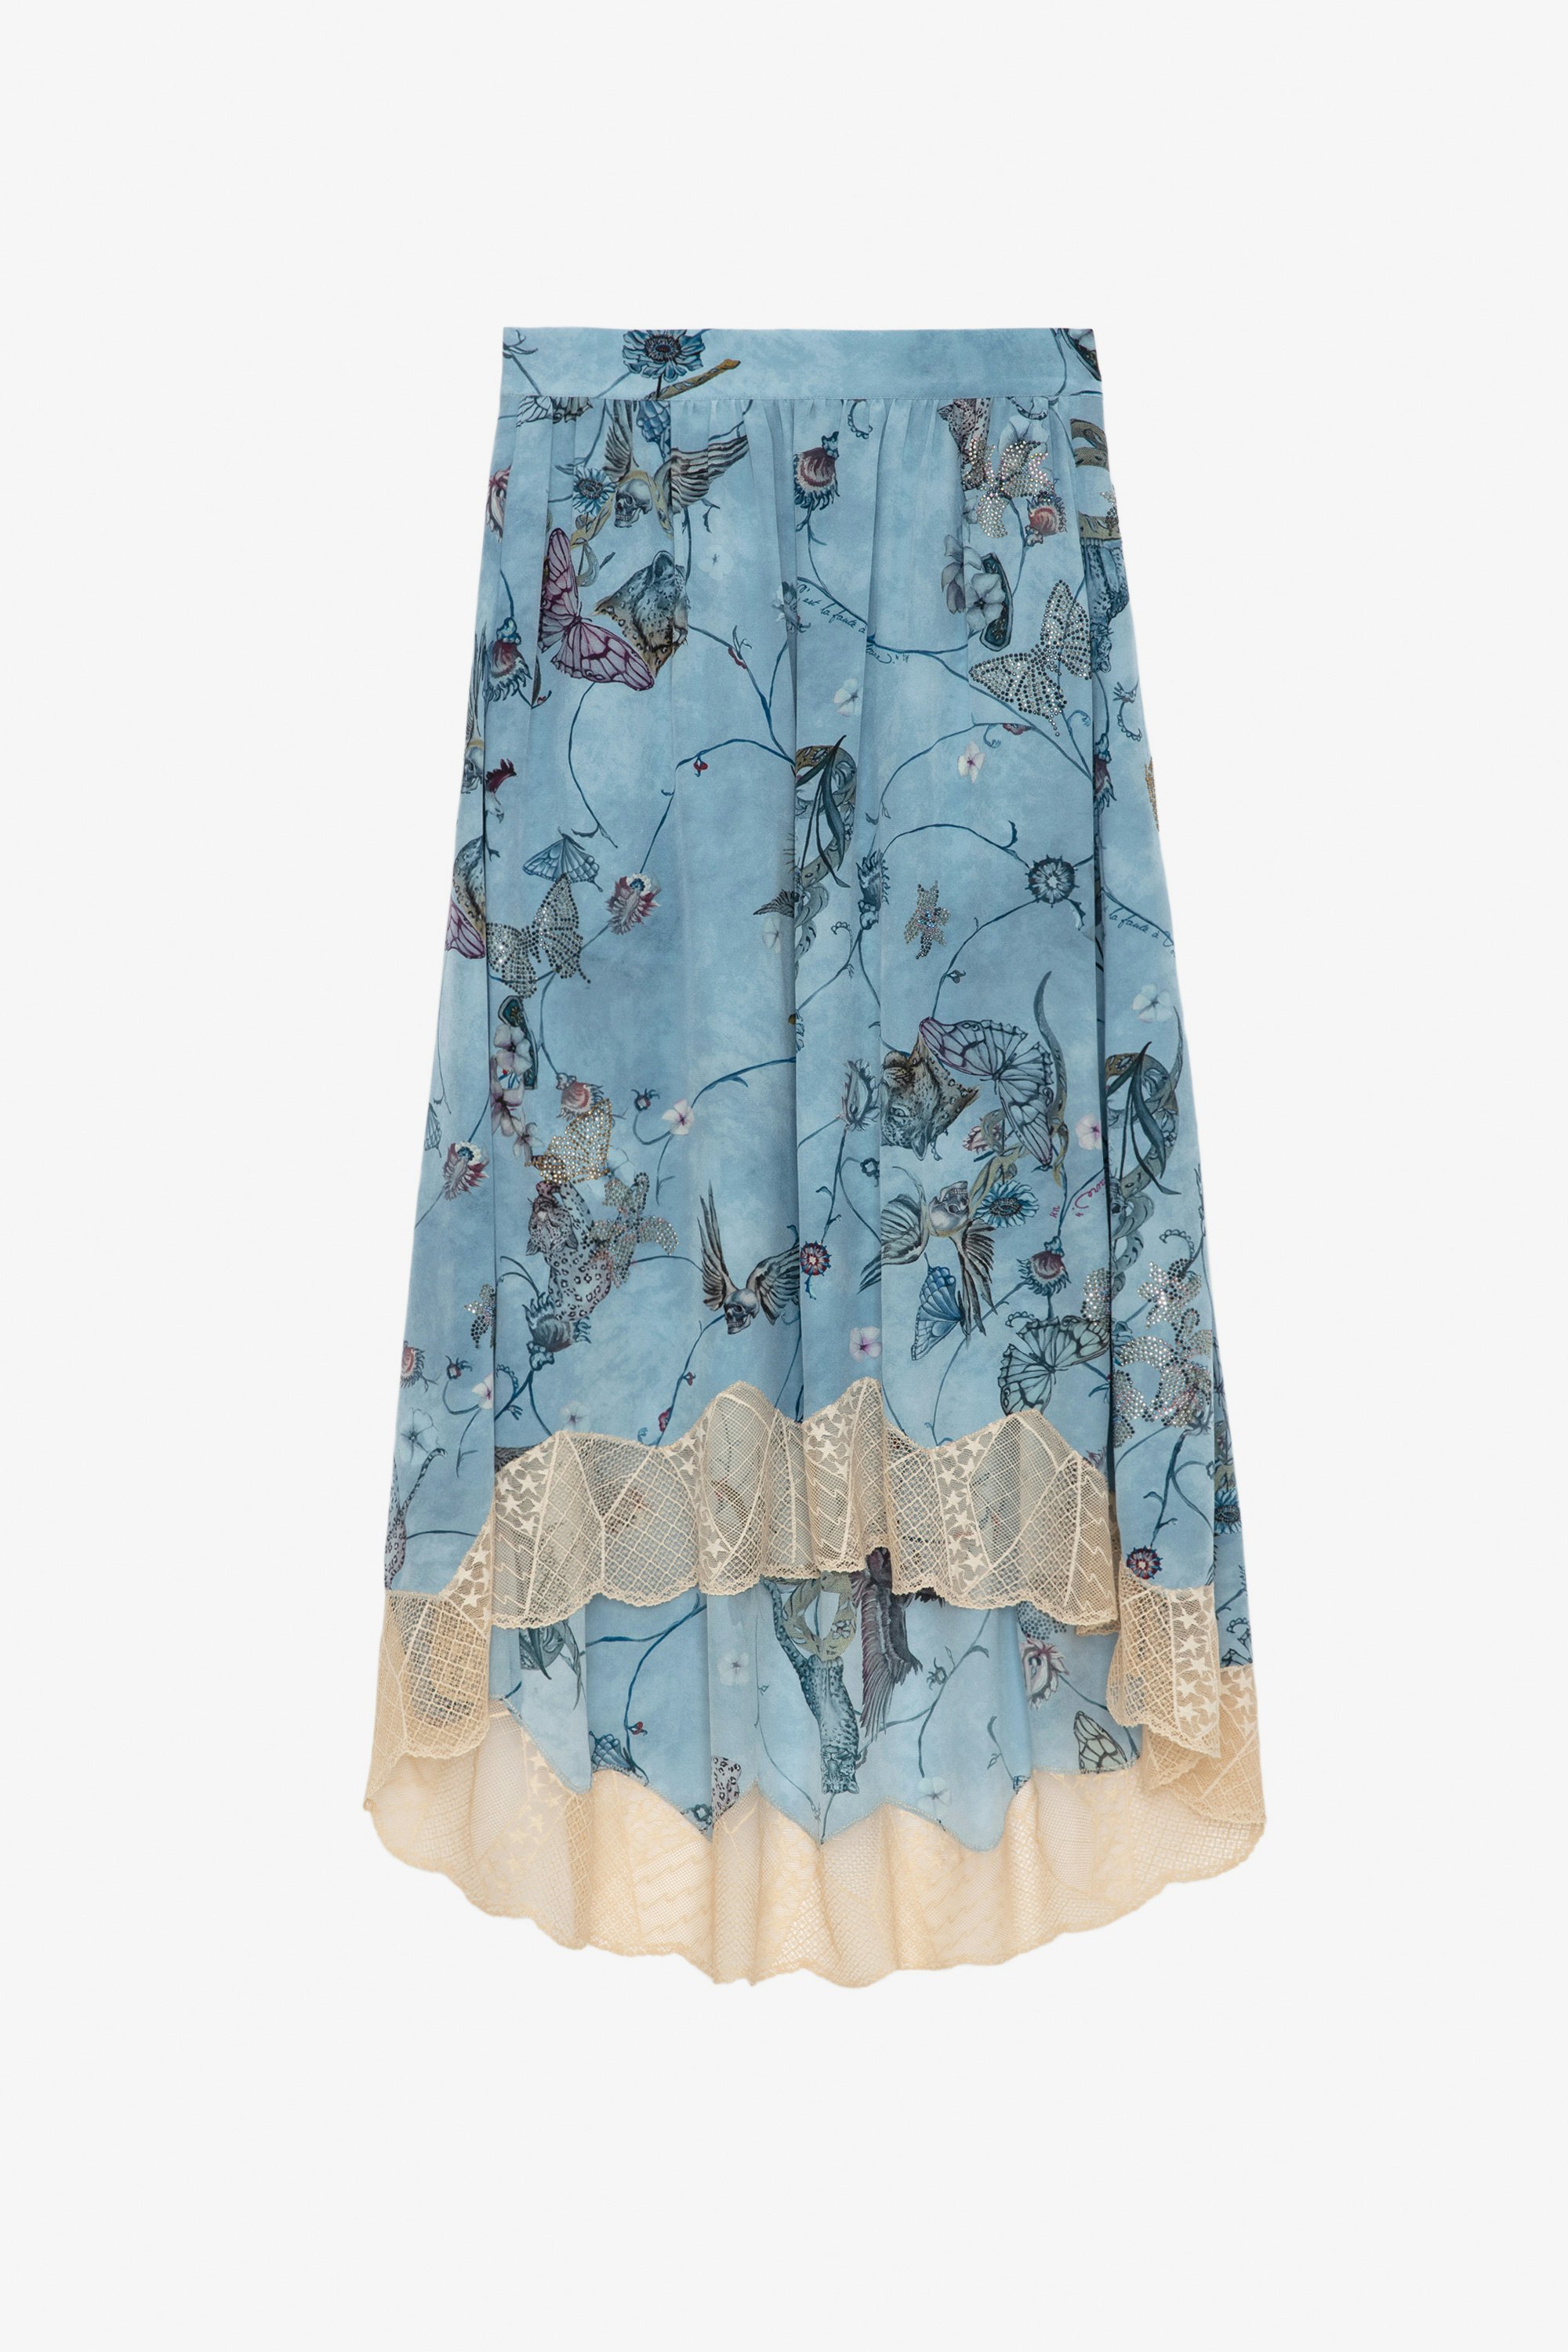 Joslin Diamanté Silk Skirt - Printed blue silk asymmetric midi skirt for a lingerie style with lace and diamanté.